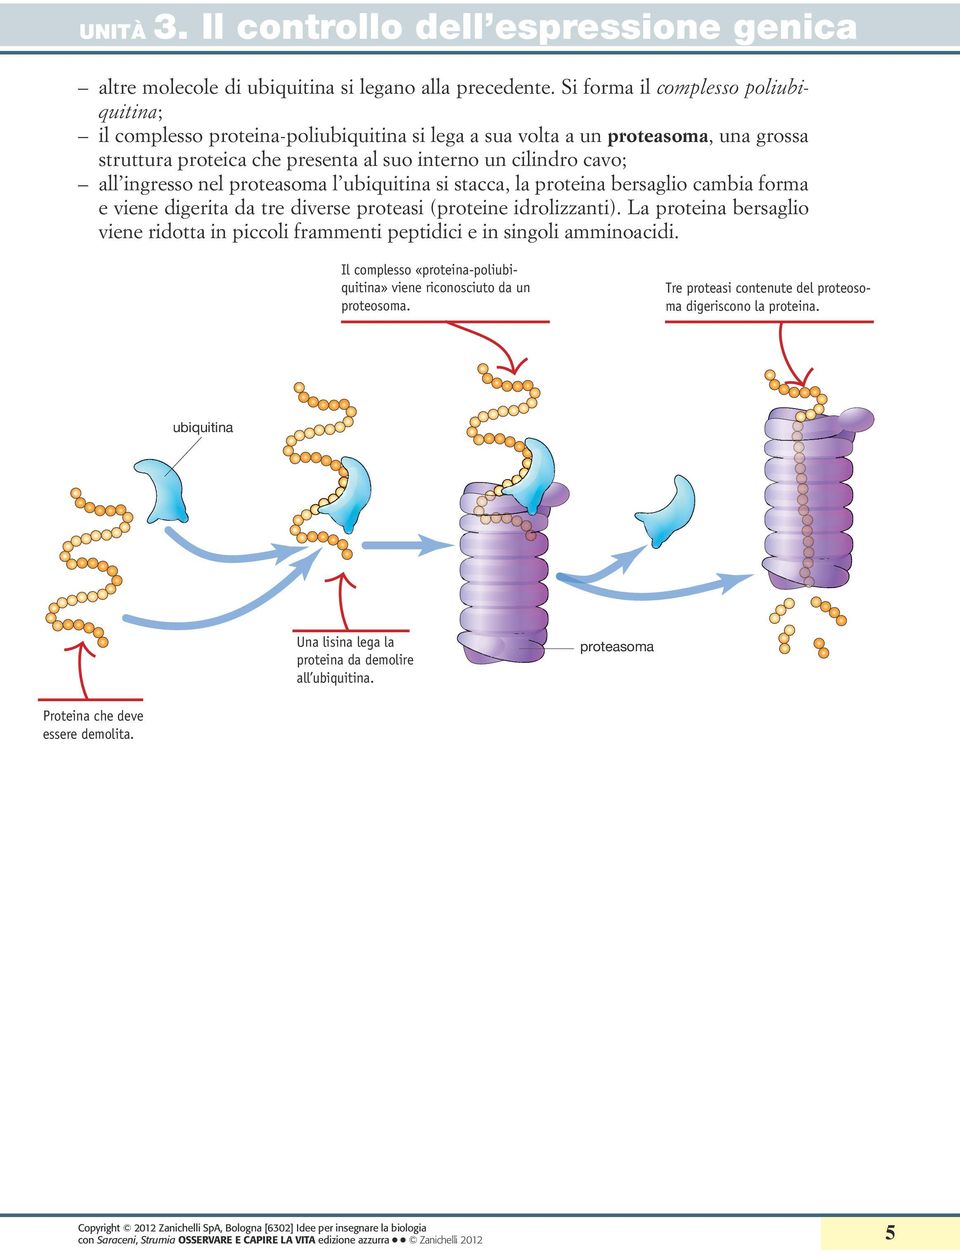 ingresso nel proteasoma l ubiquitina si stacca, la bersaglio cambia forma e viene digerita da tre diverse proteasi (proteine idrolizzanti).